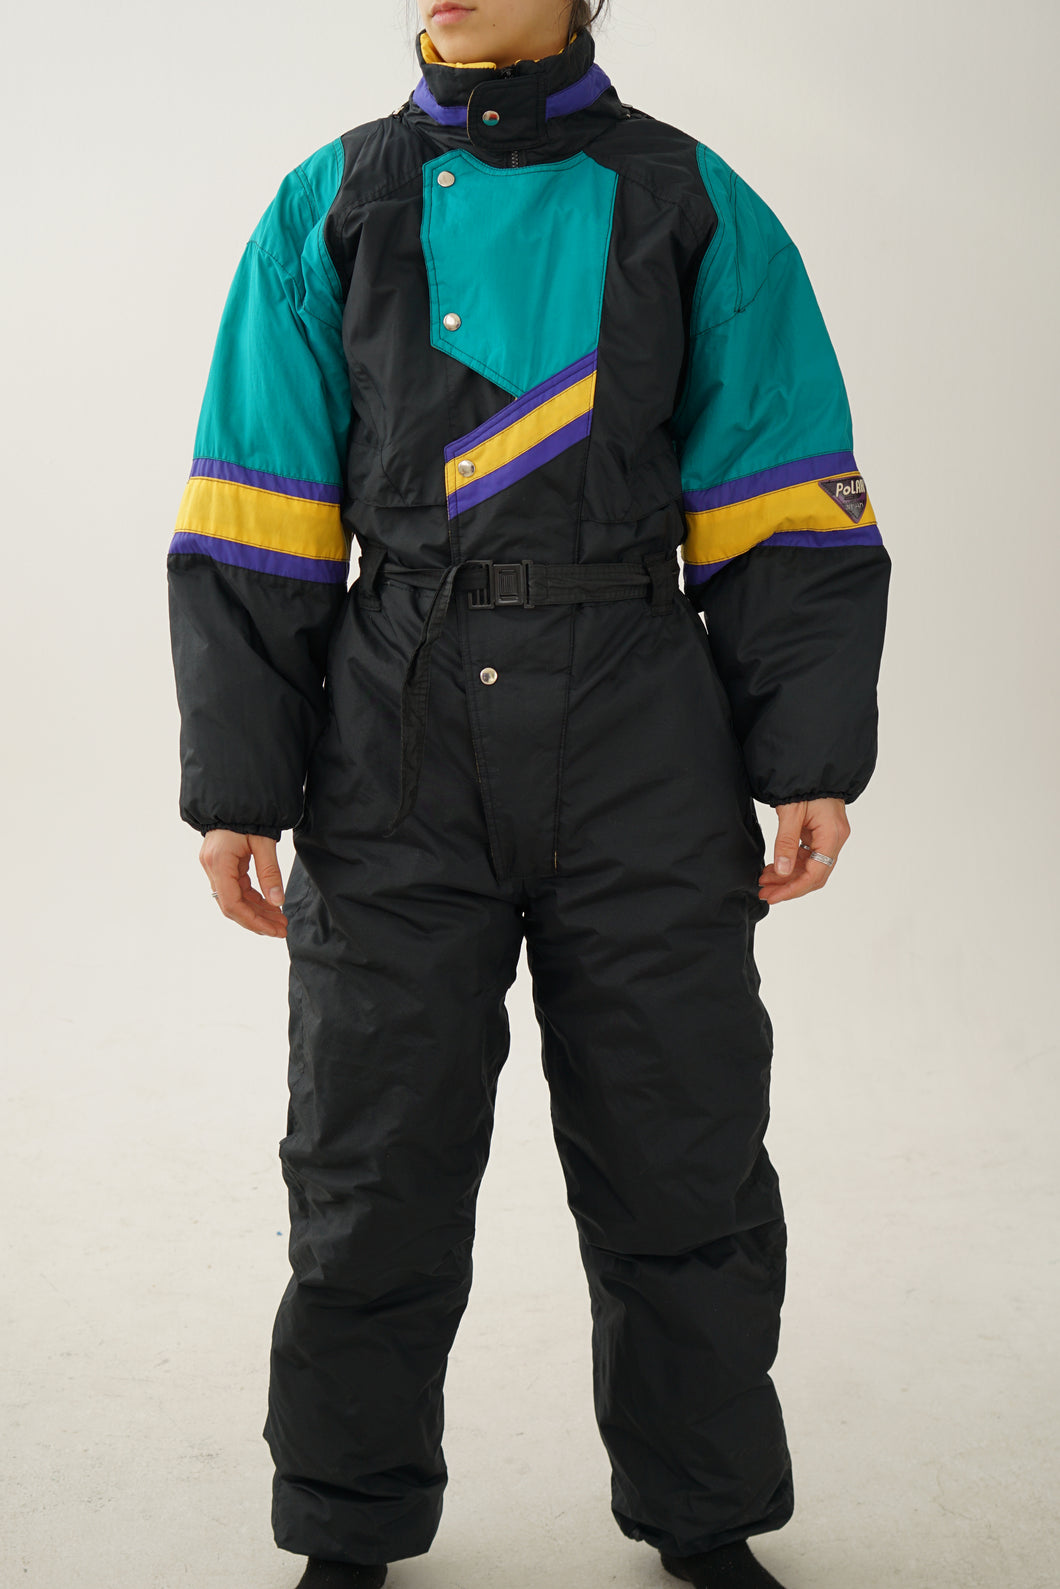 Vintage one piece New Face ski suit, snow suit noir avec couleurs M